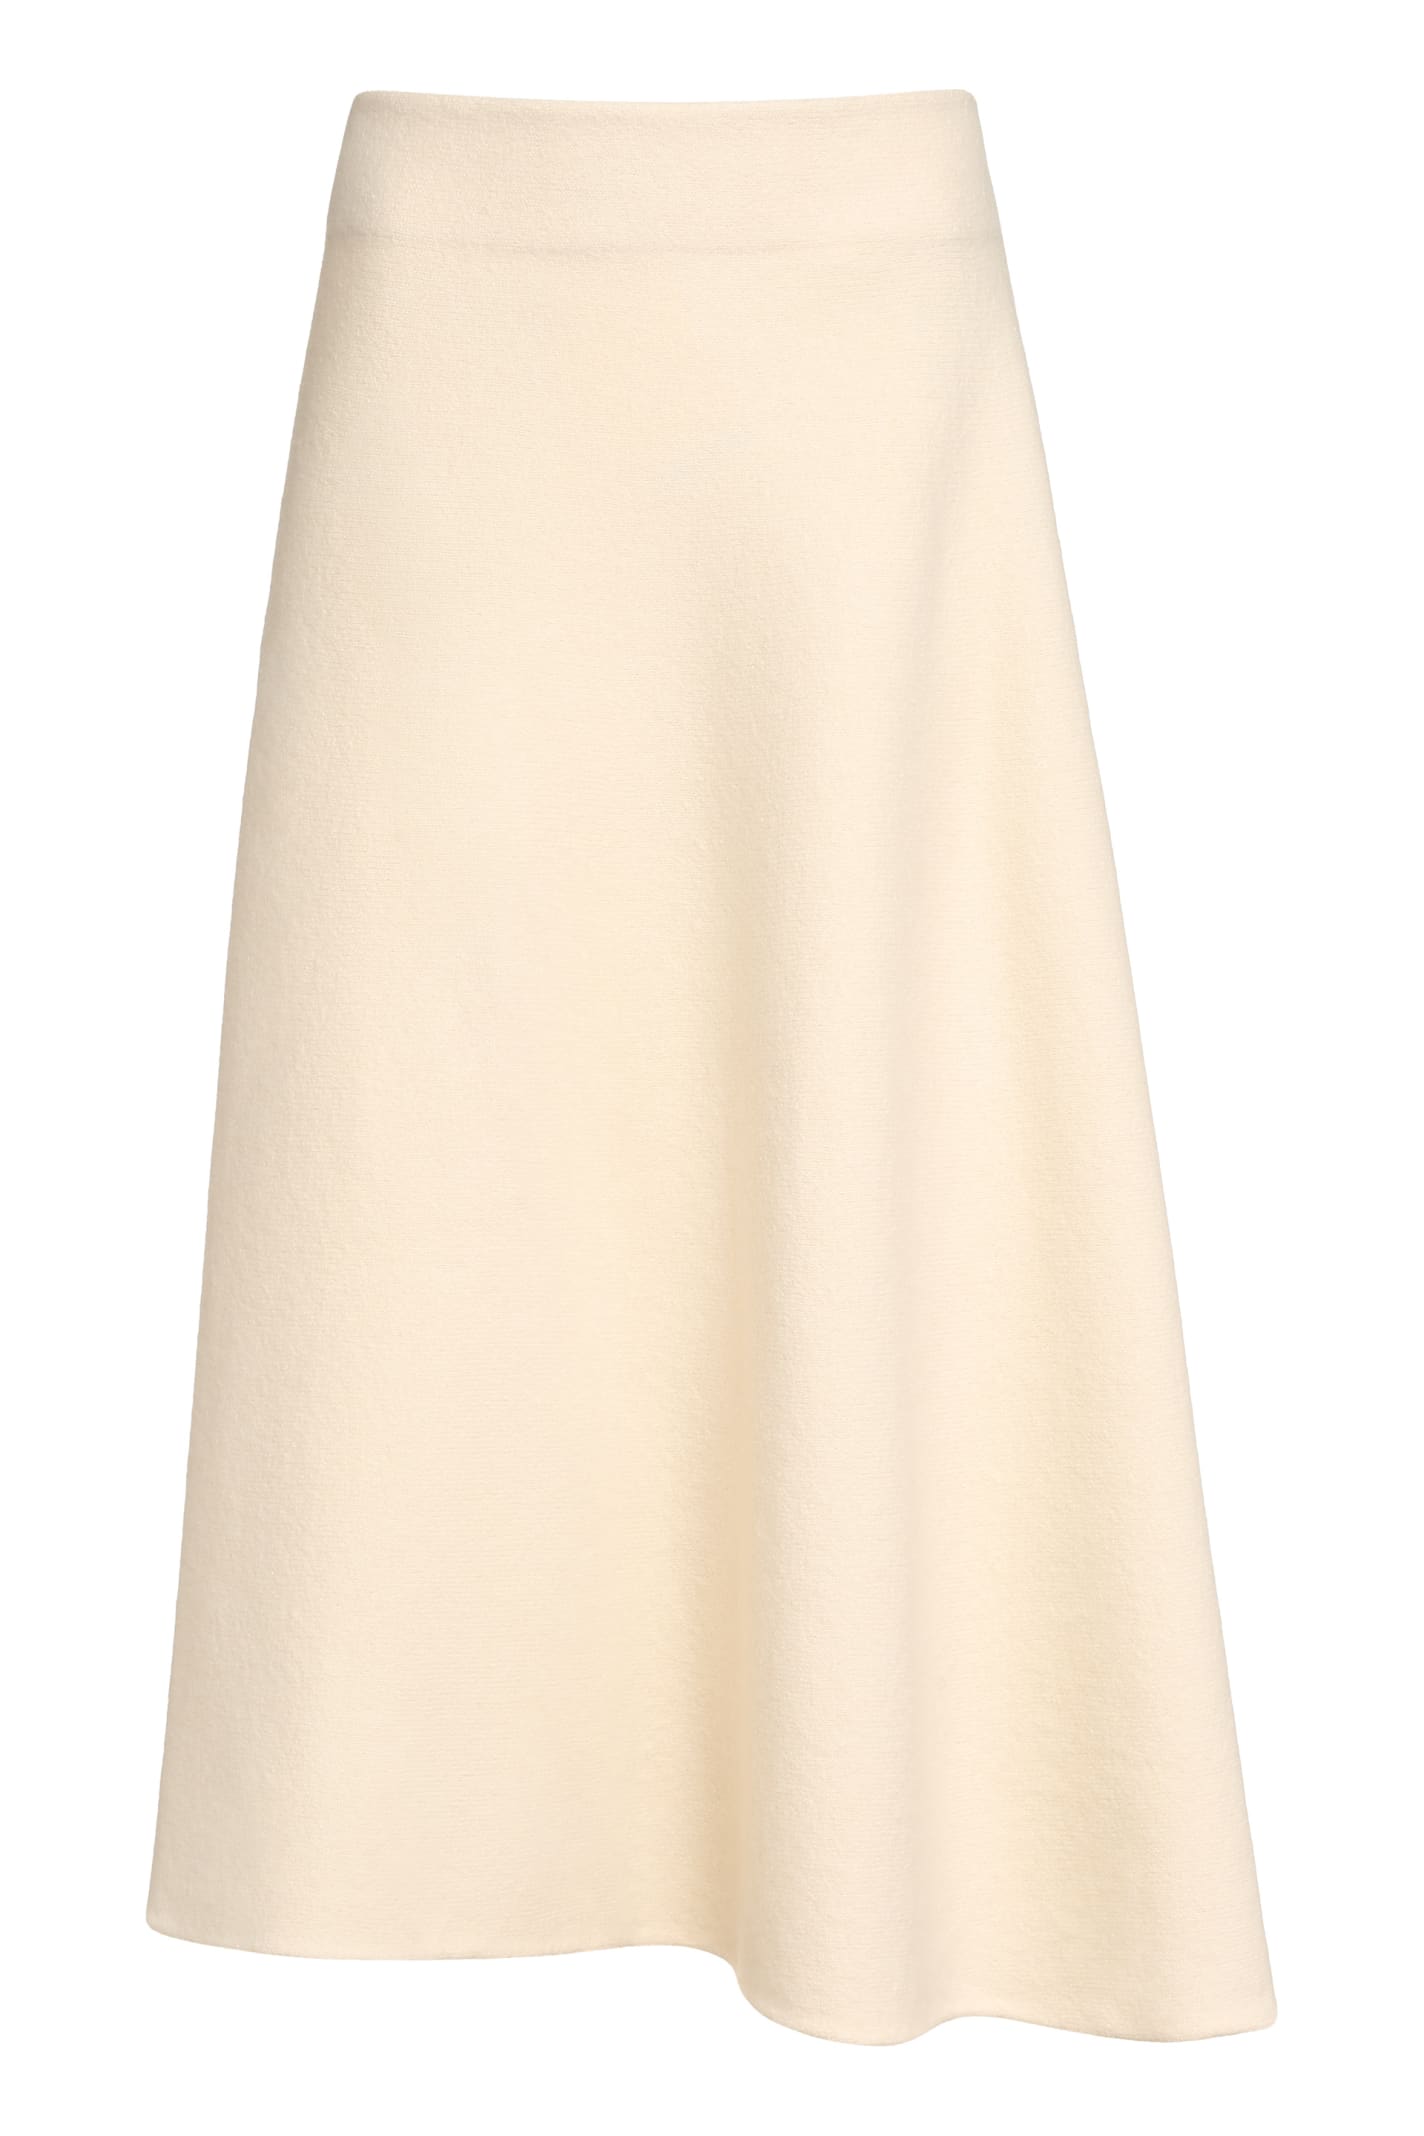 Jil Sander Wool A-line Skirt